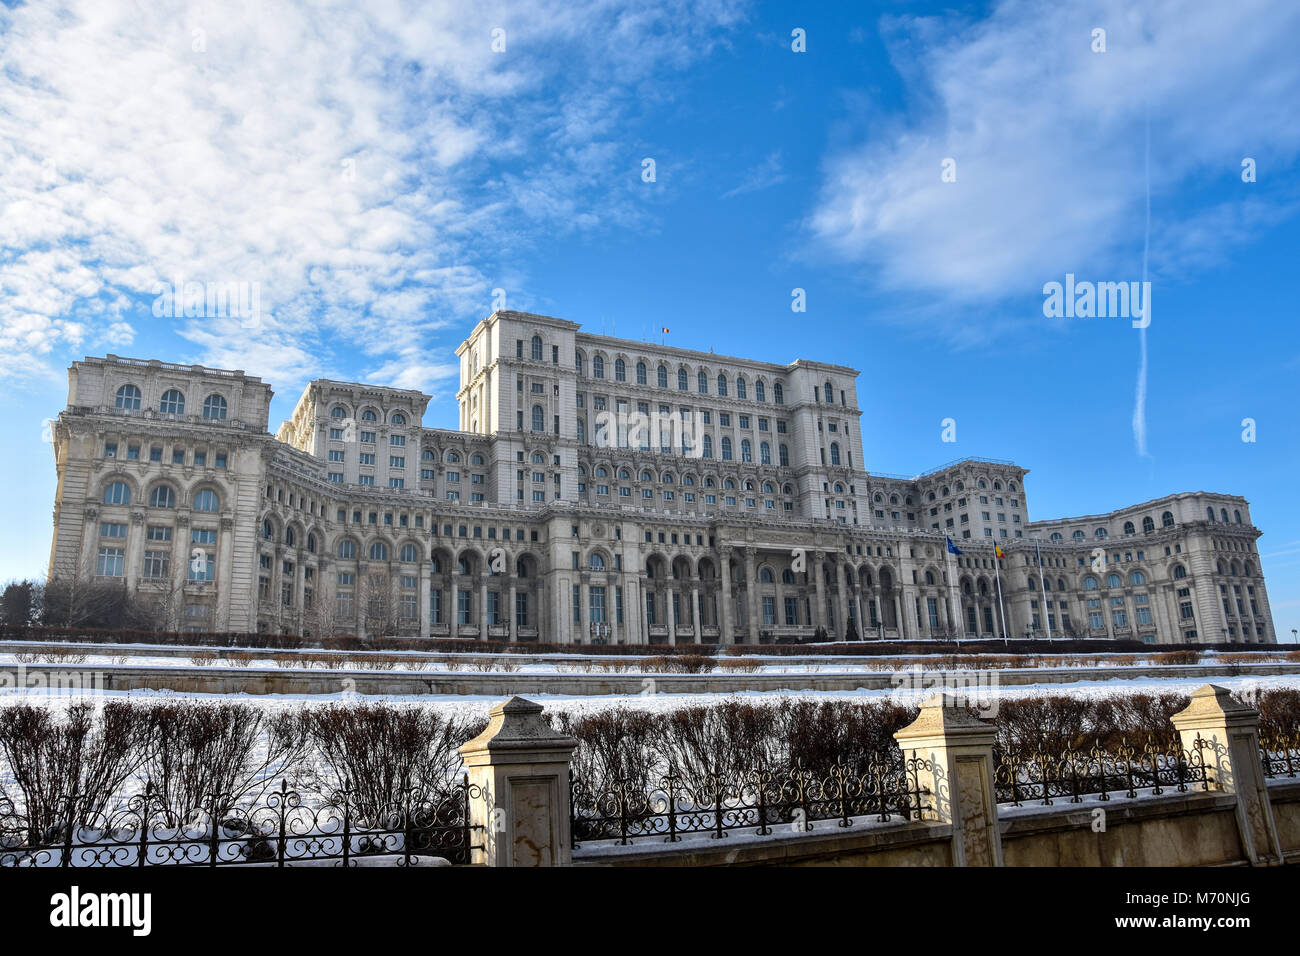 Palace of the Parliament (Palatul Parlamentului din Romania) also known as People's House (Casa Poporului) Bucharest, Romania Stock Photo